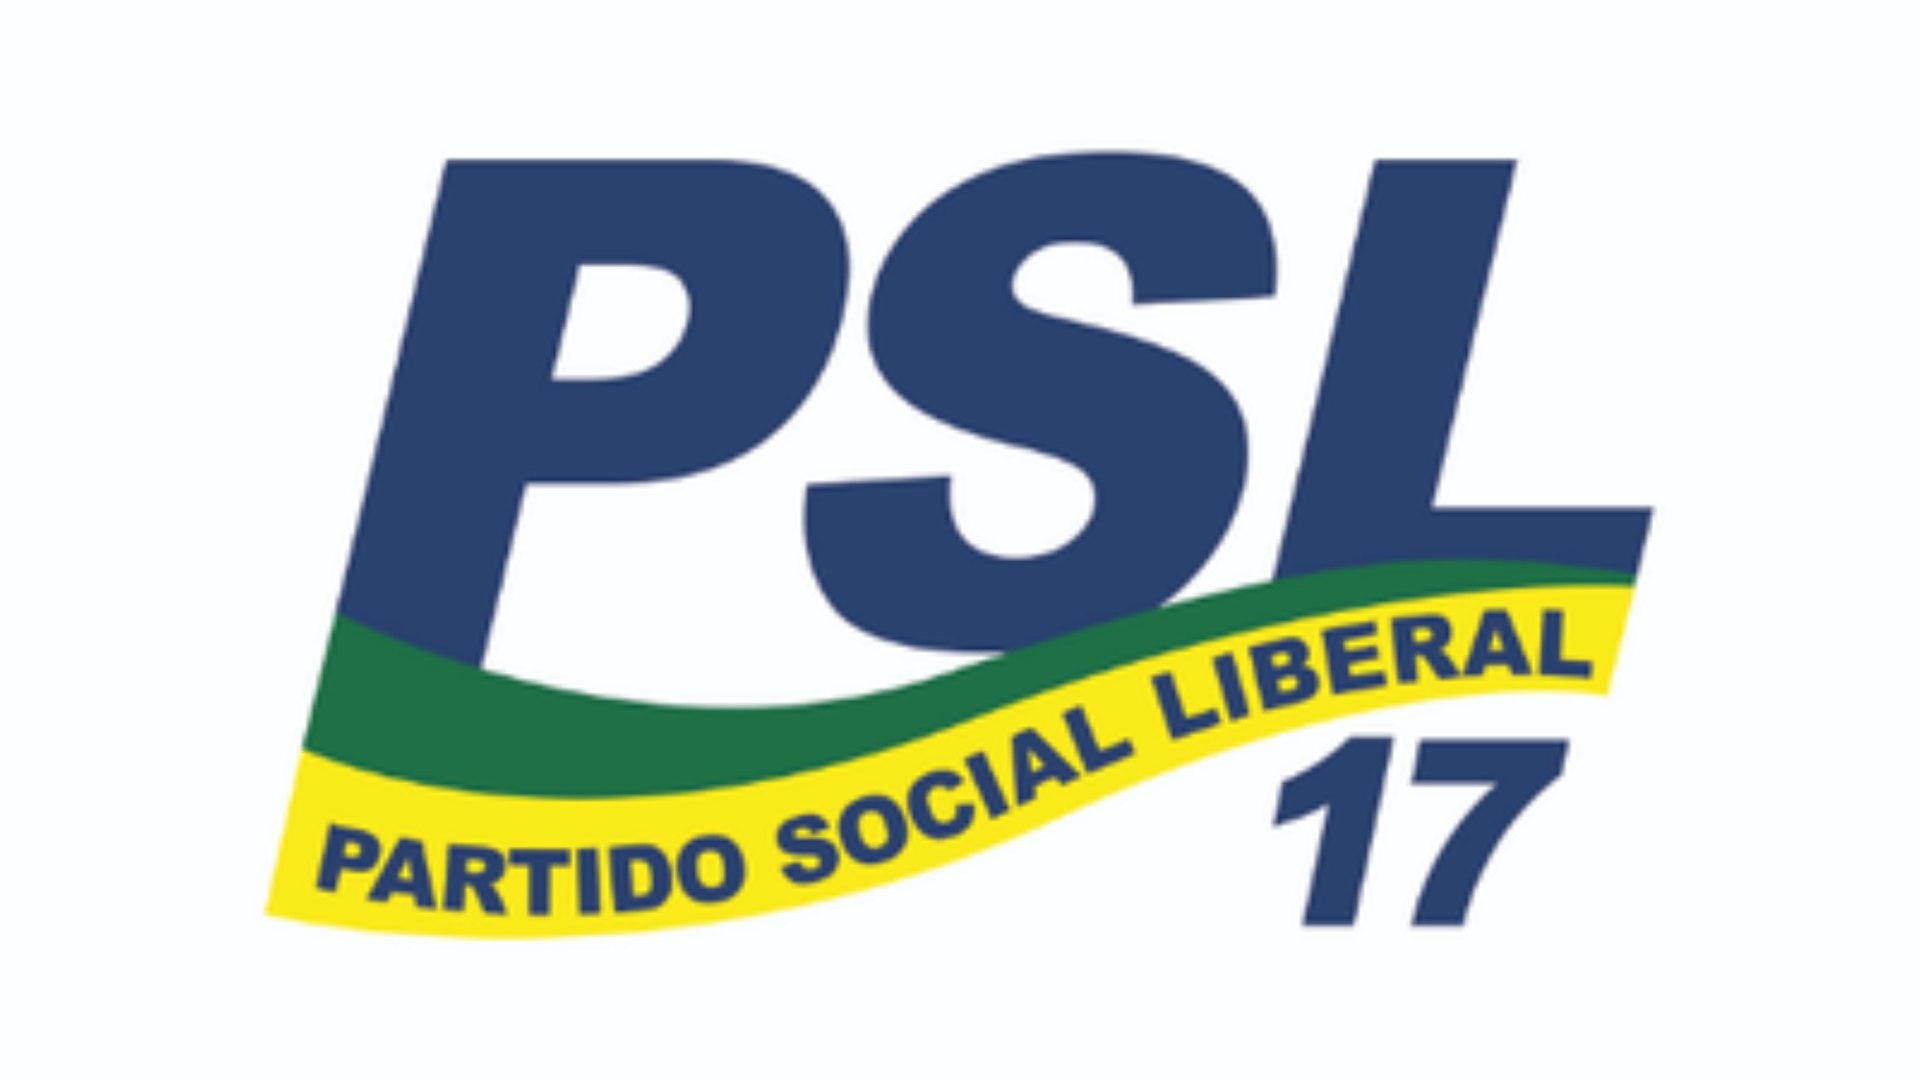 Partido Social Liberal realiza convenção partidária dia 09